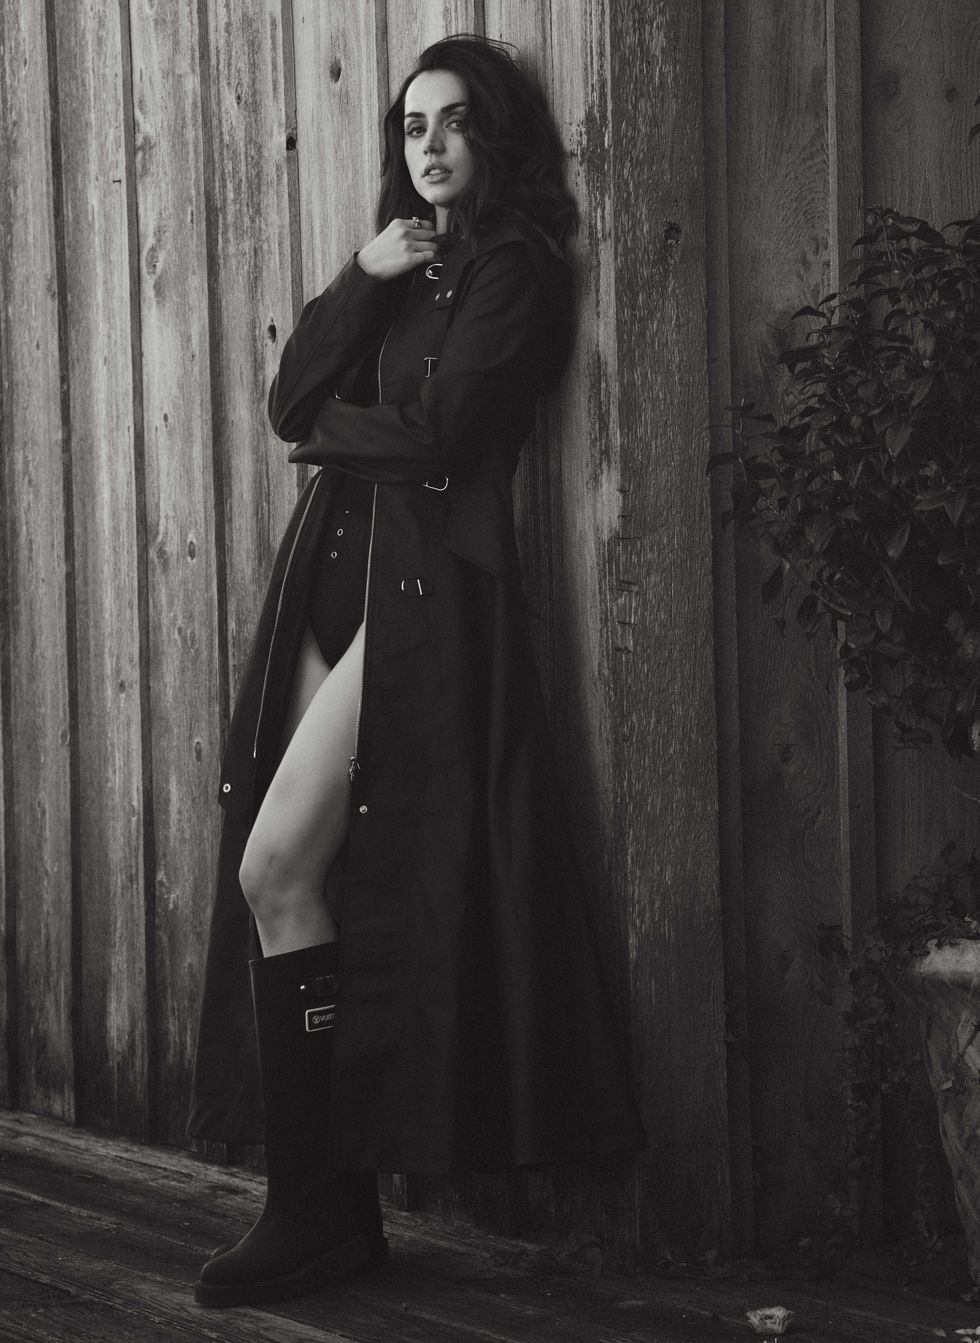 Актриса Ана де Армас позирует в нескромной фотосессии для журнала Elle